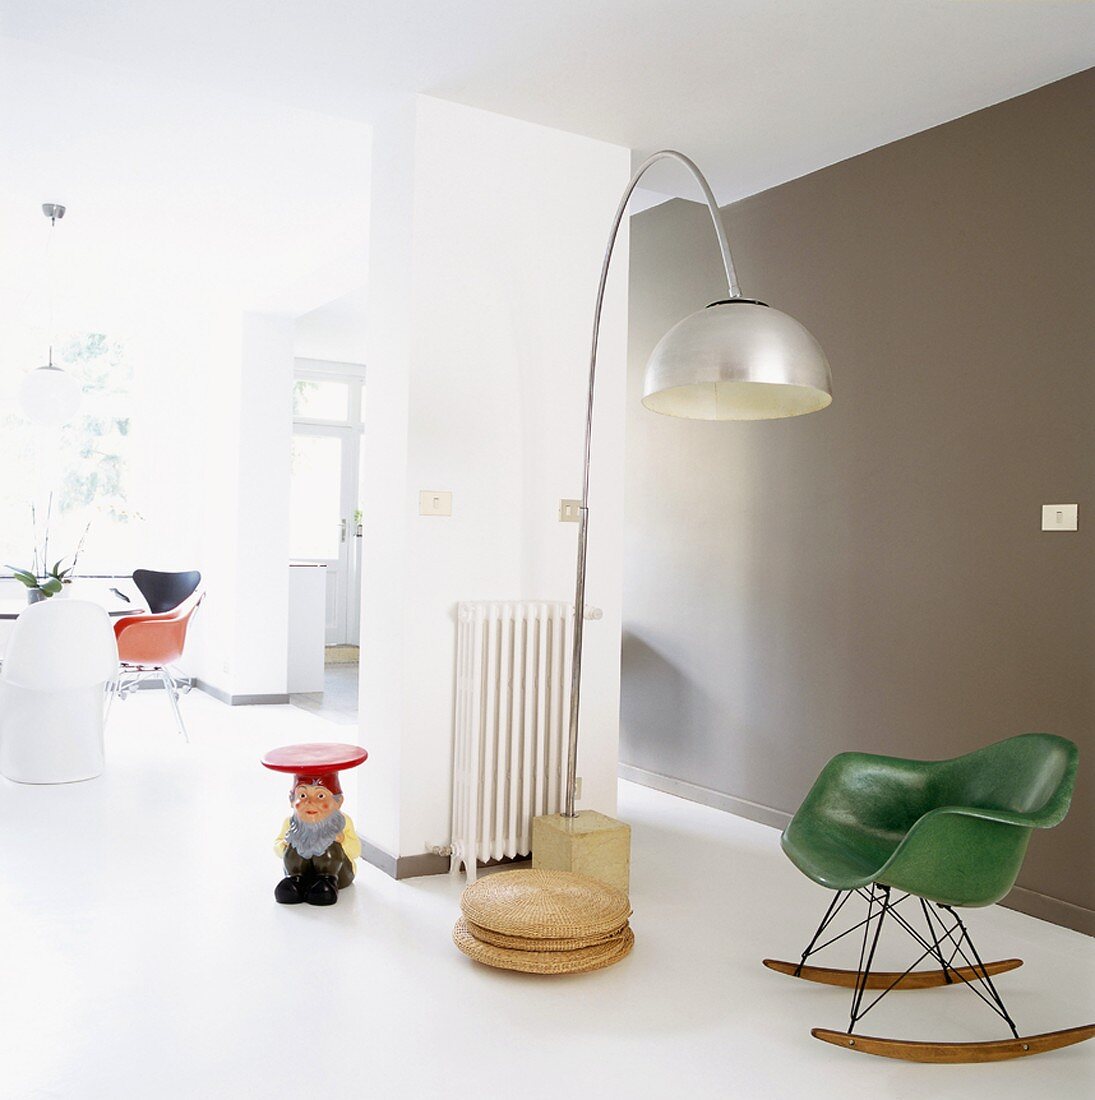 Offener Wohnraum im Loftstil mit grünem 50er Jahre Schaukelsessel, 70er Jahre Bogenlampe und Zwergen-Beistelltisch